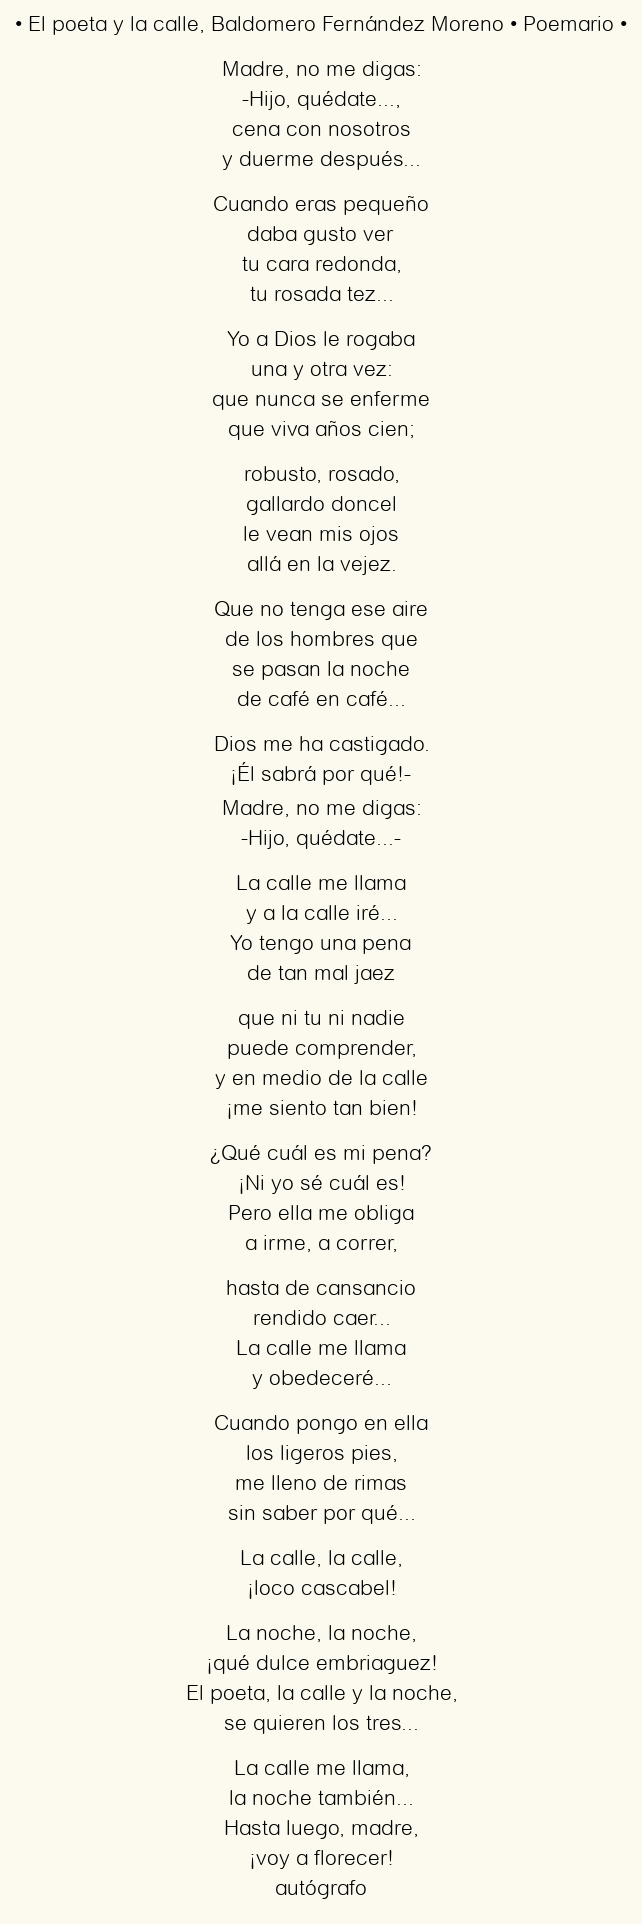 Imagen con el poema El poeta y la calle, por Baldomero Fernández Moreno